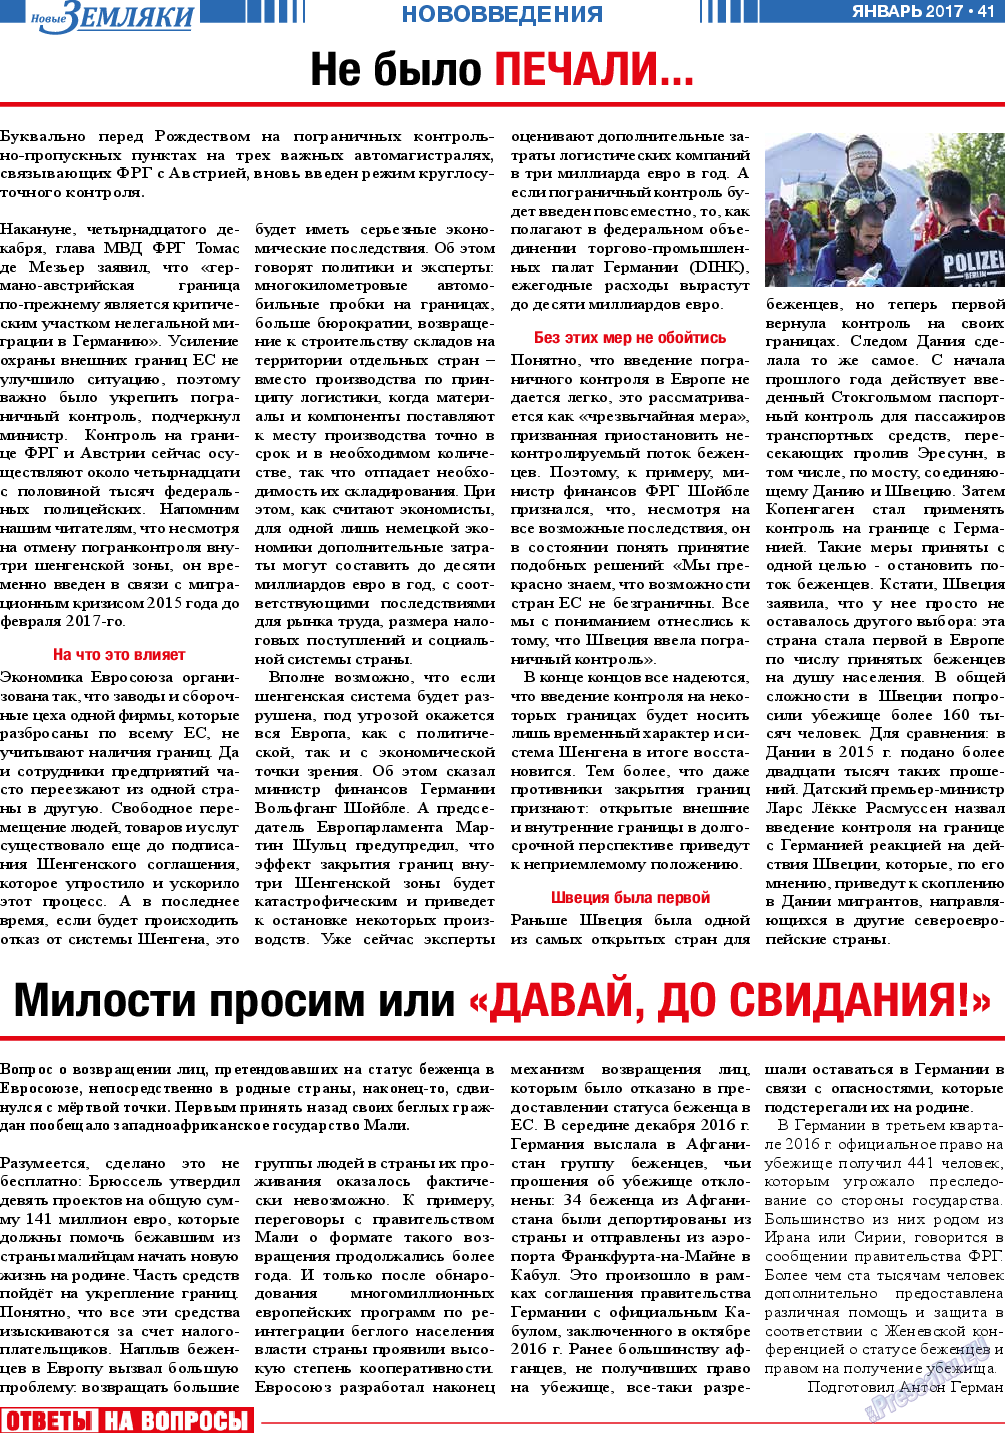 Новые Земляки (газета). 2017 год, номер 1, стр. 41